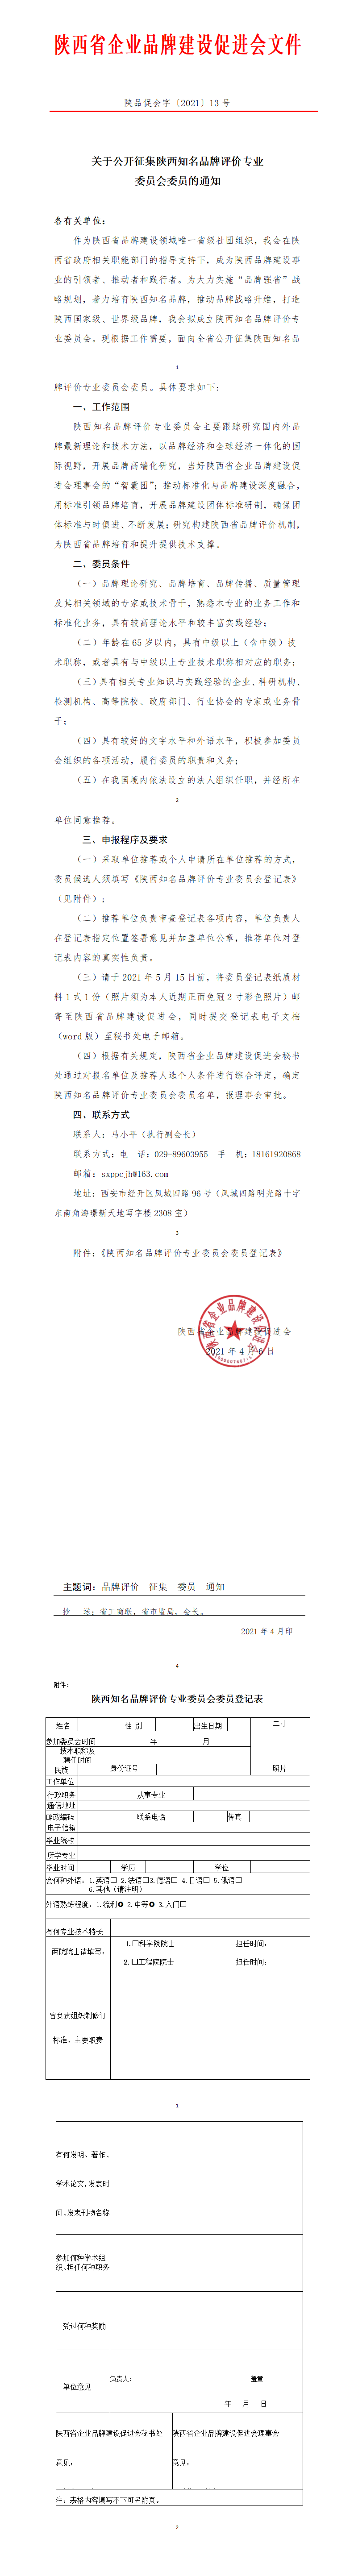  陕西省企业品牌建设促进会文件关于公开征集陕西知名品牌评价专业 委员会委员的通知(图1)